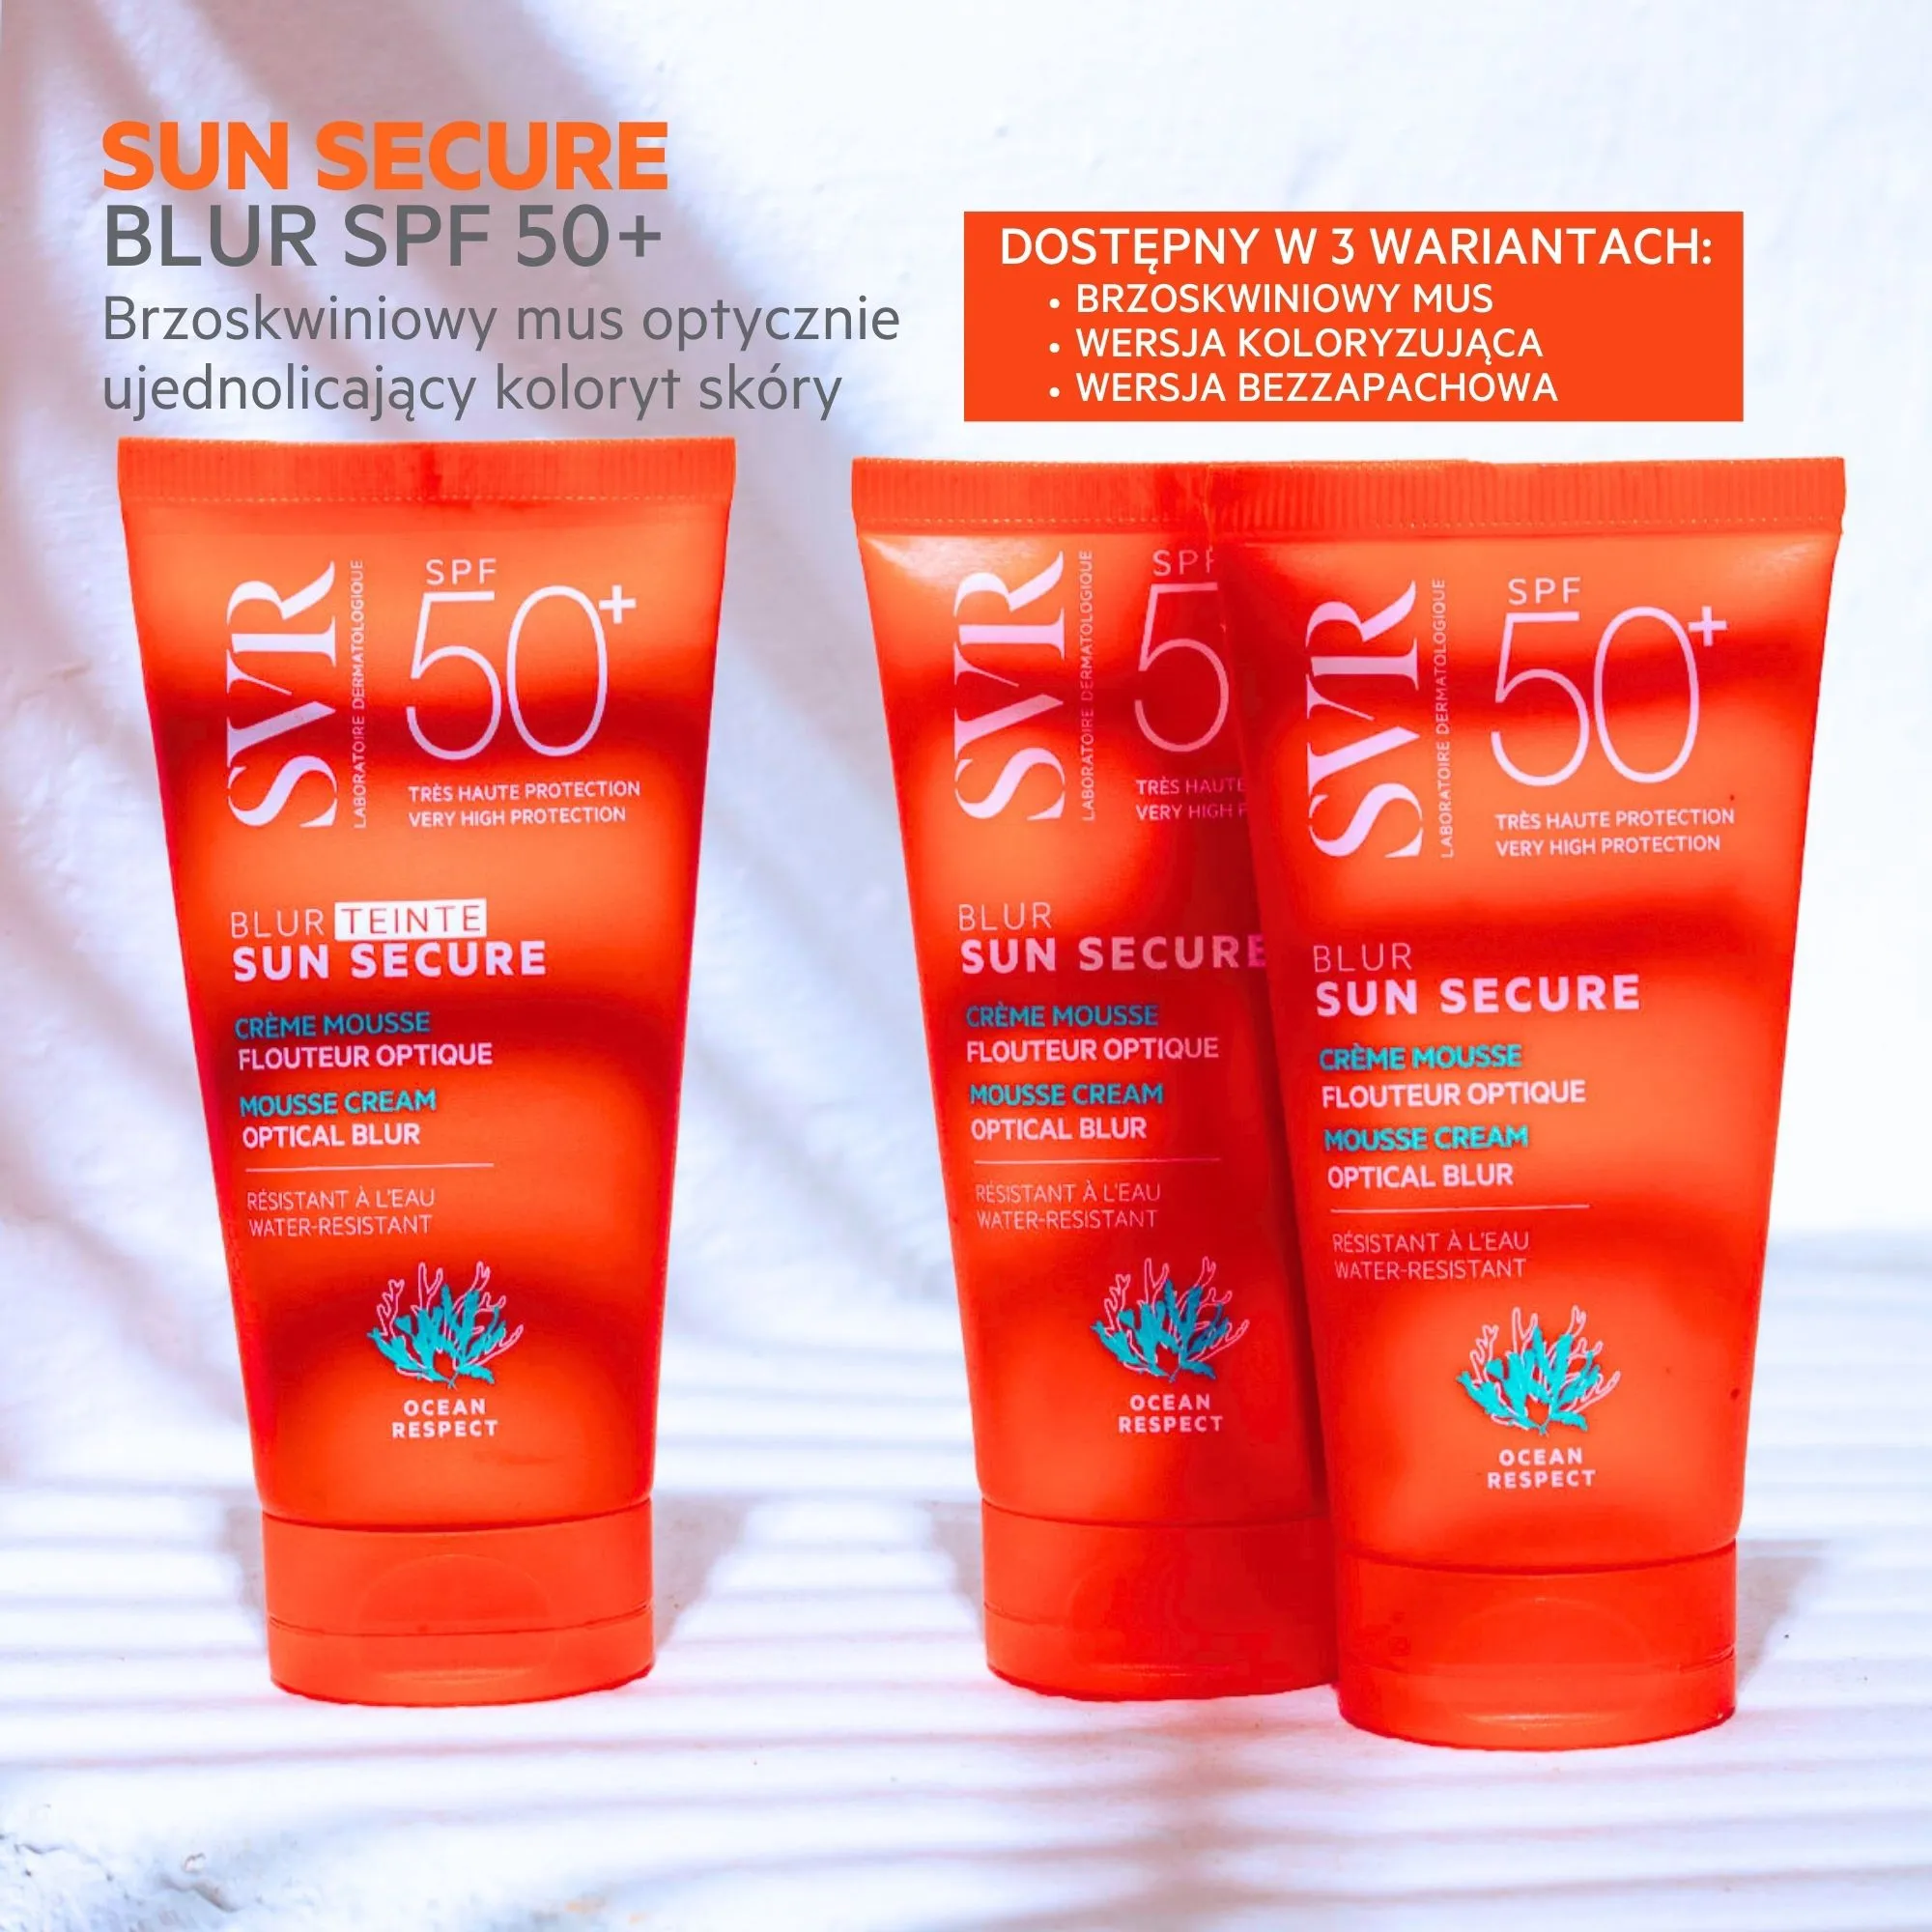 SVR Sun Secure Blur SPF 50+, nawilżający, kremowy mus ochronny, 50 ml 